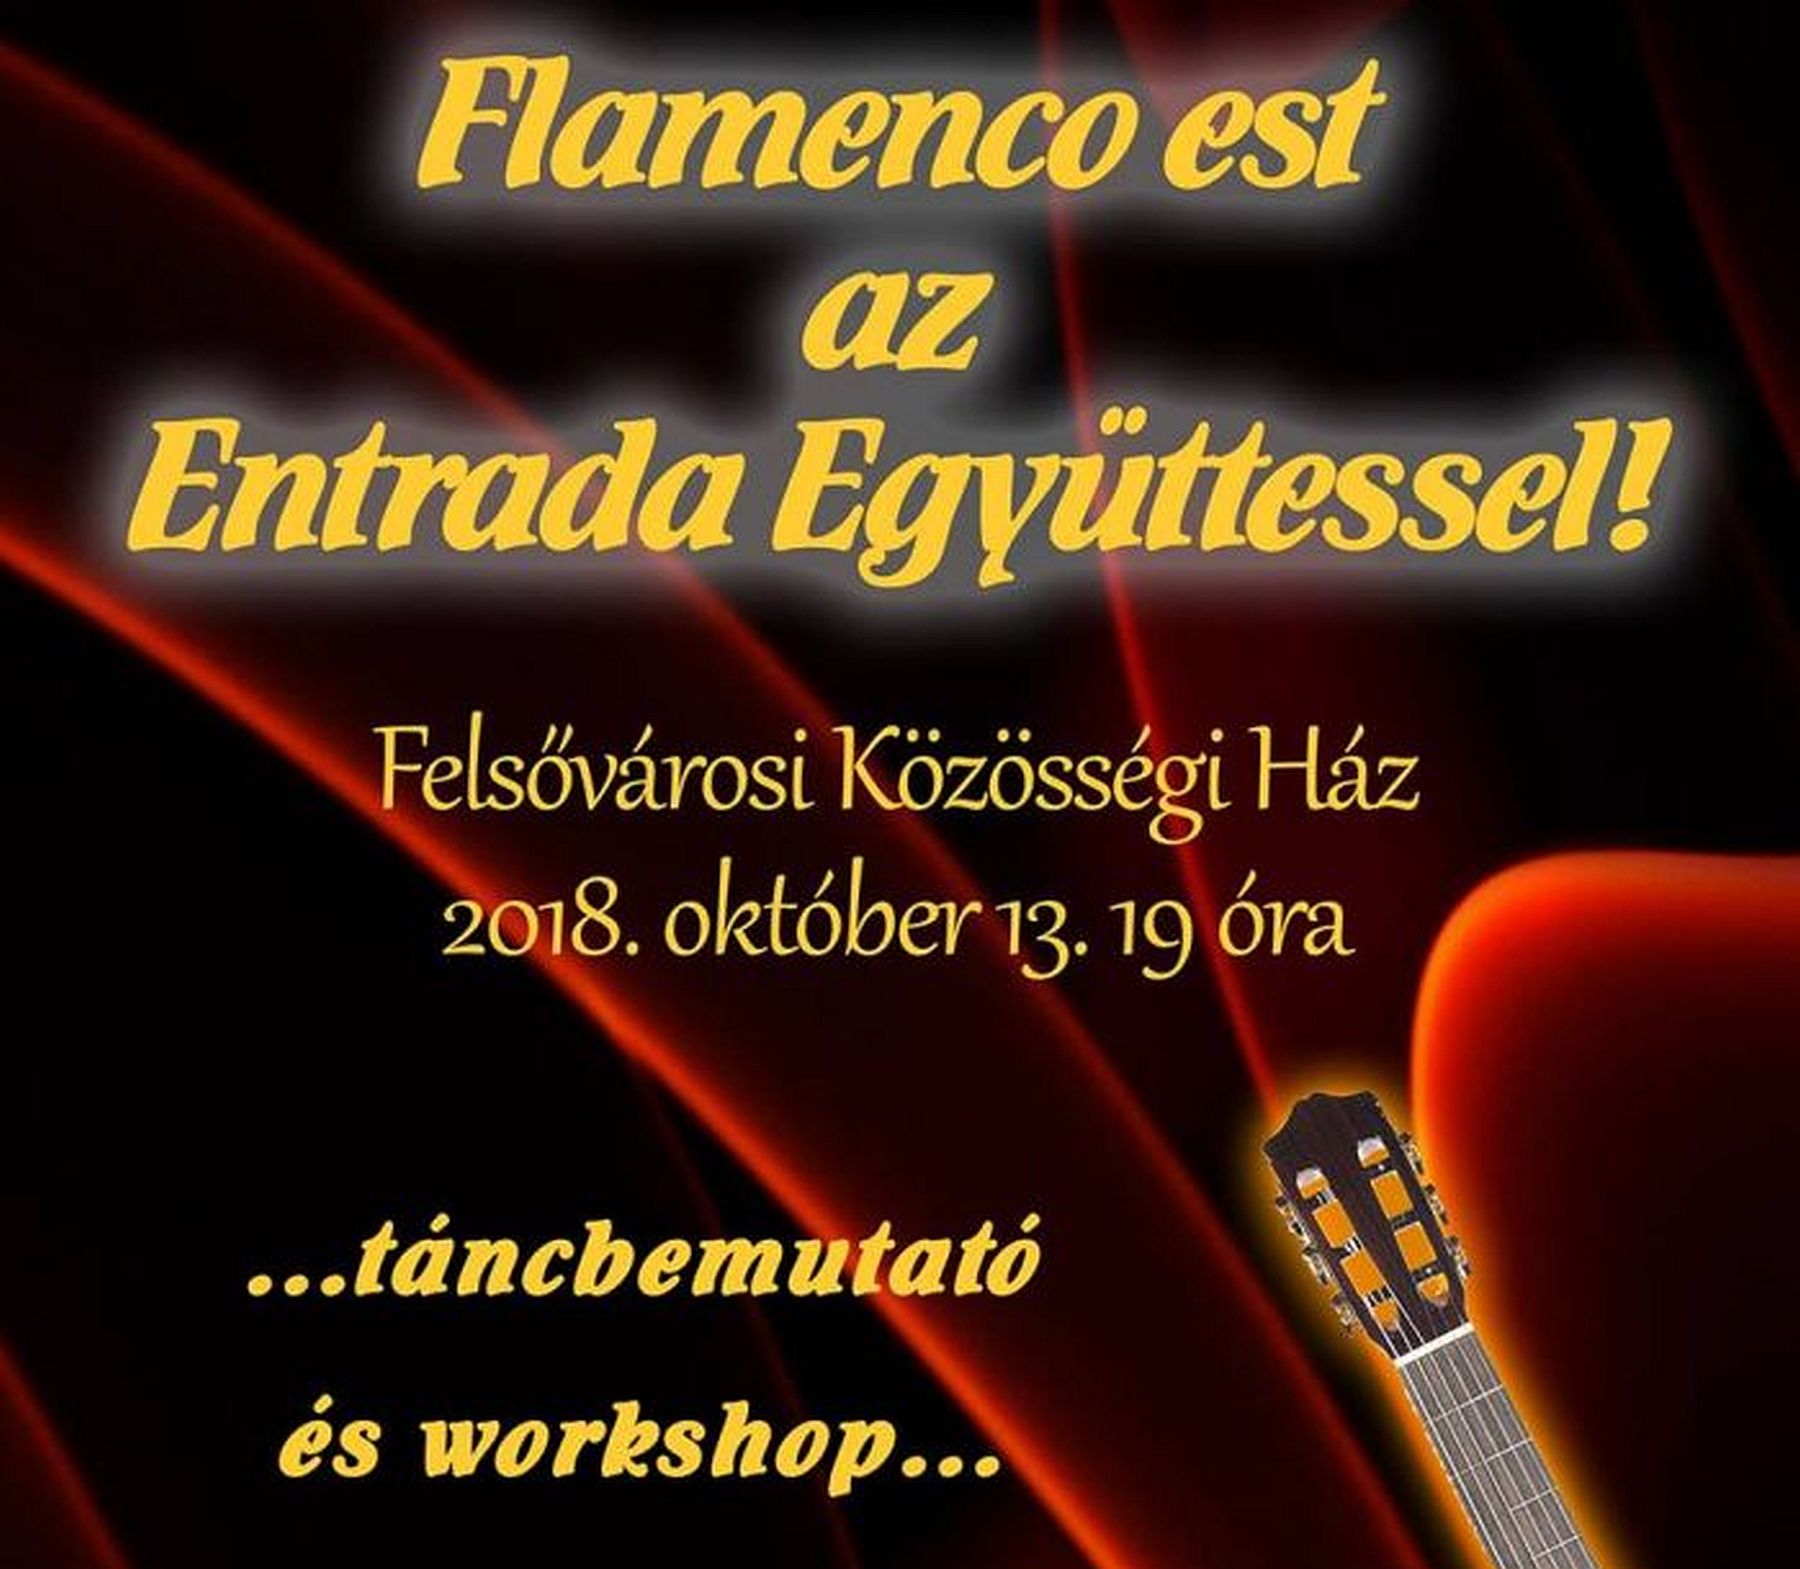 Flamenco est lesz az Entrada Együttessel a Felsővárosi Közösségi Házban